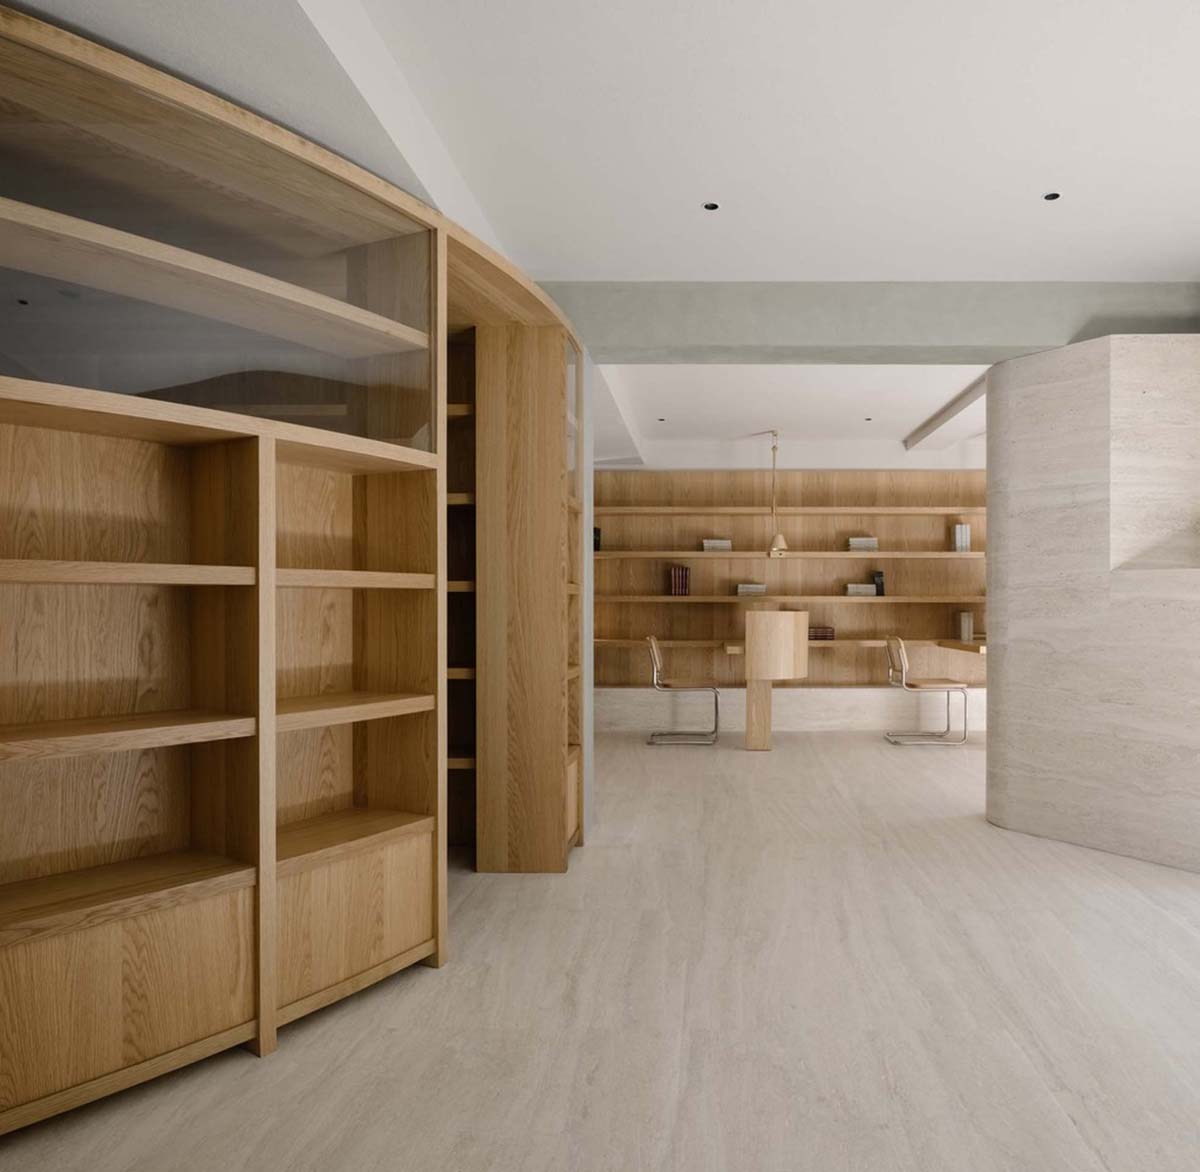 Atelier tao+c создает читальный зал с полукруглыми книжными полками и деревянными конструкциями в Шанхае 